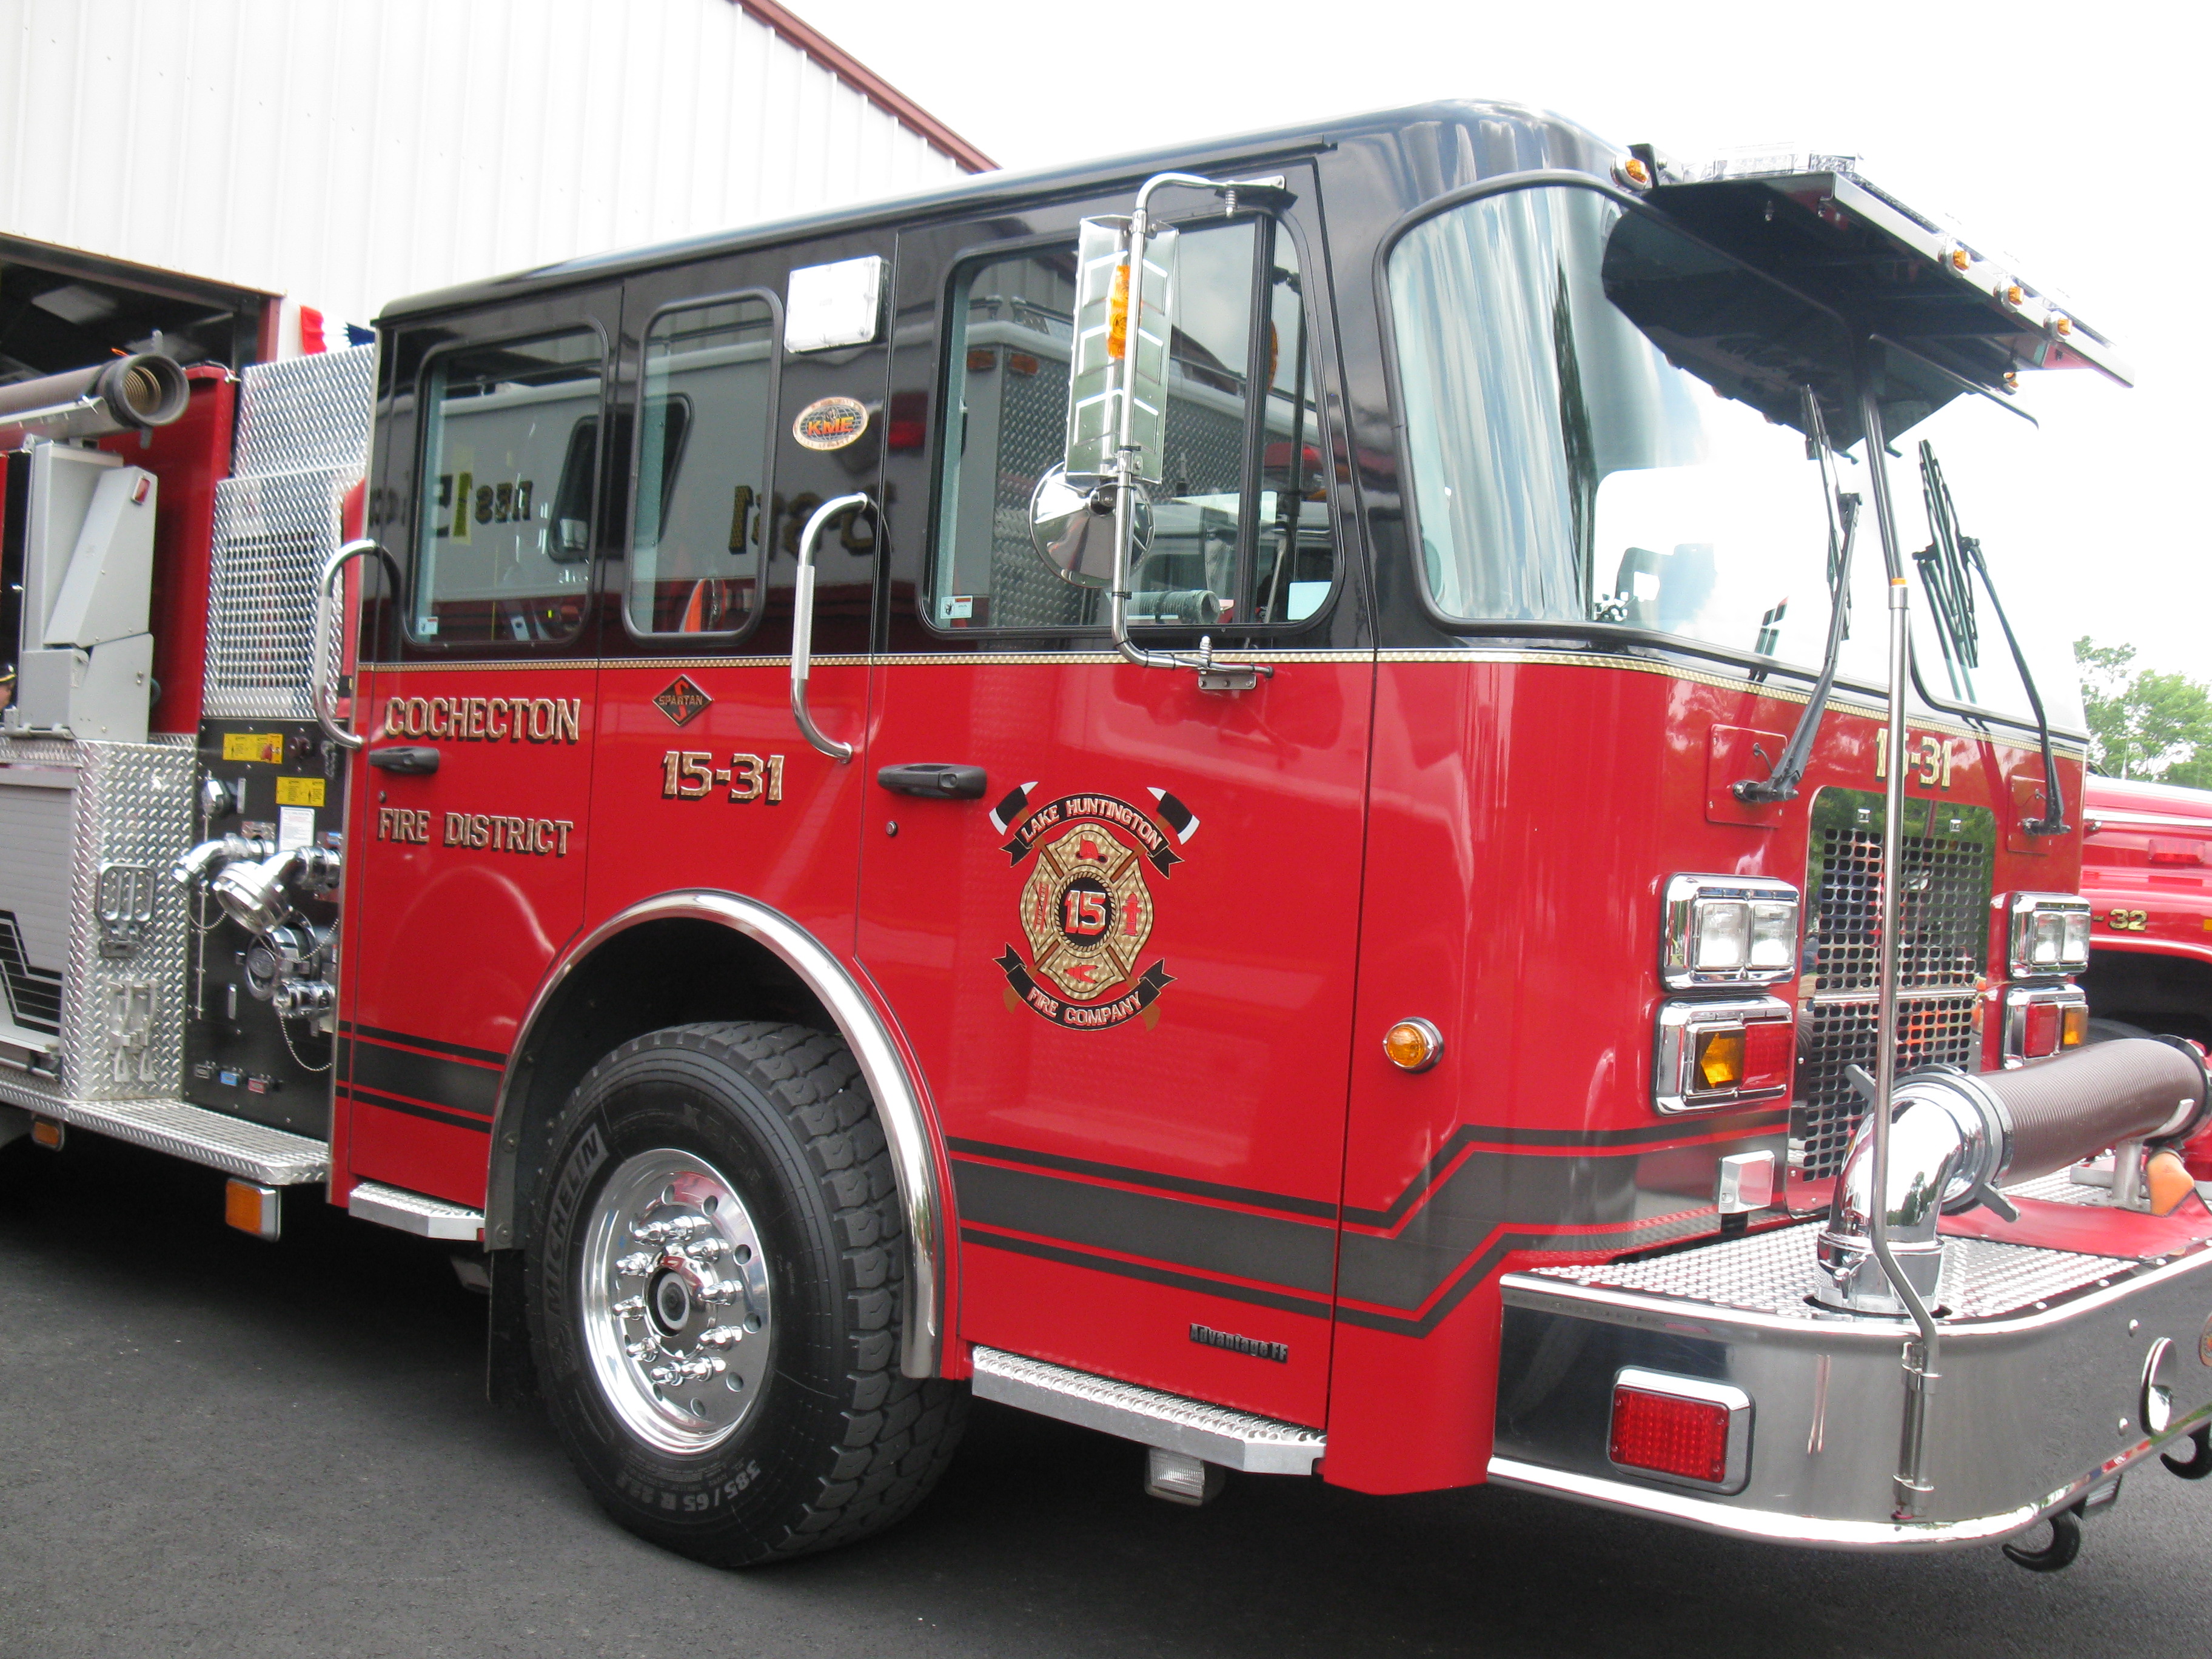 Fire Truck 15-31 Cochecton